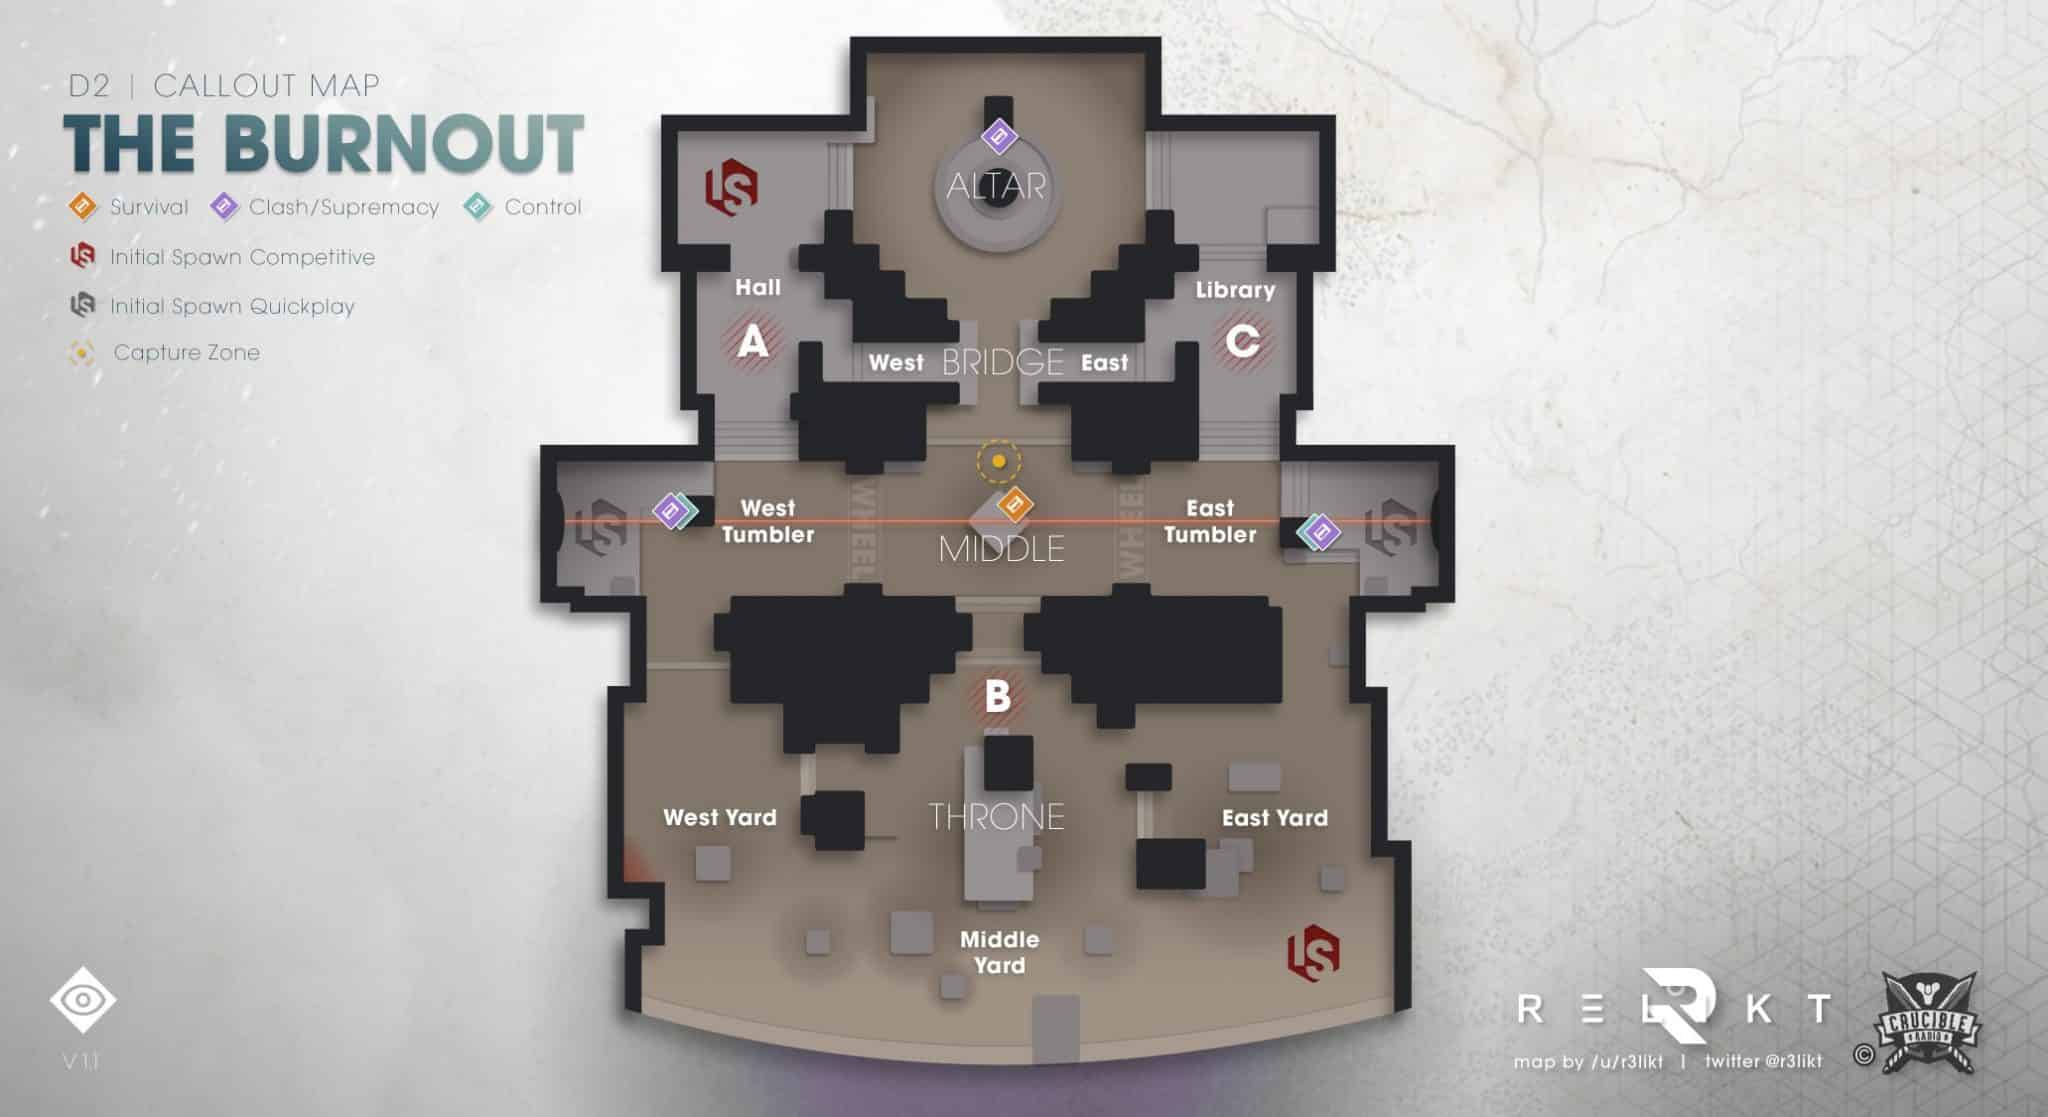 Bild mit einer Callout-Karte für die Destiny 2-Karte The Burnout